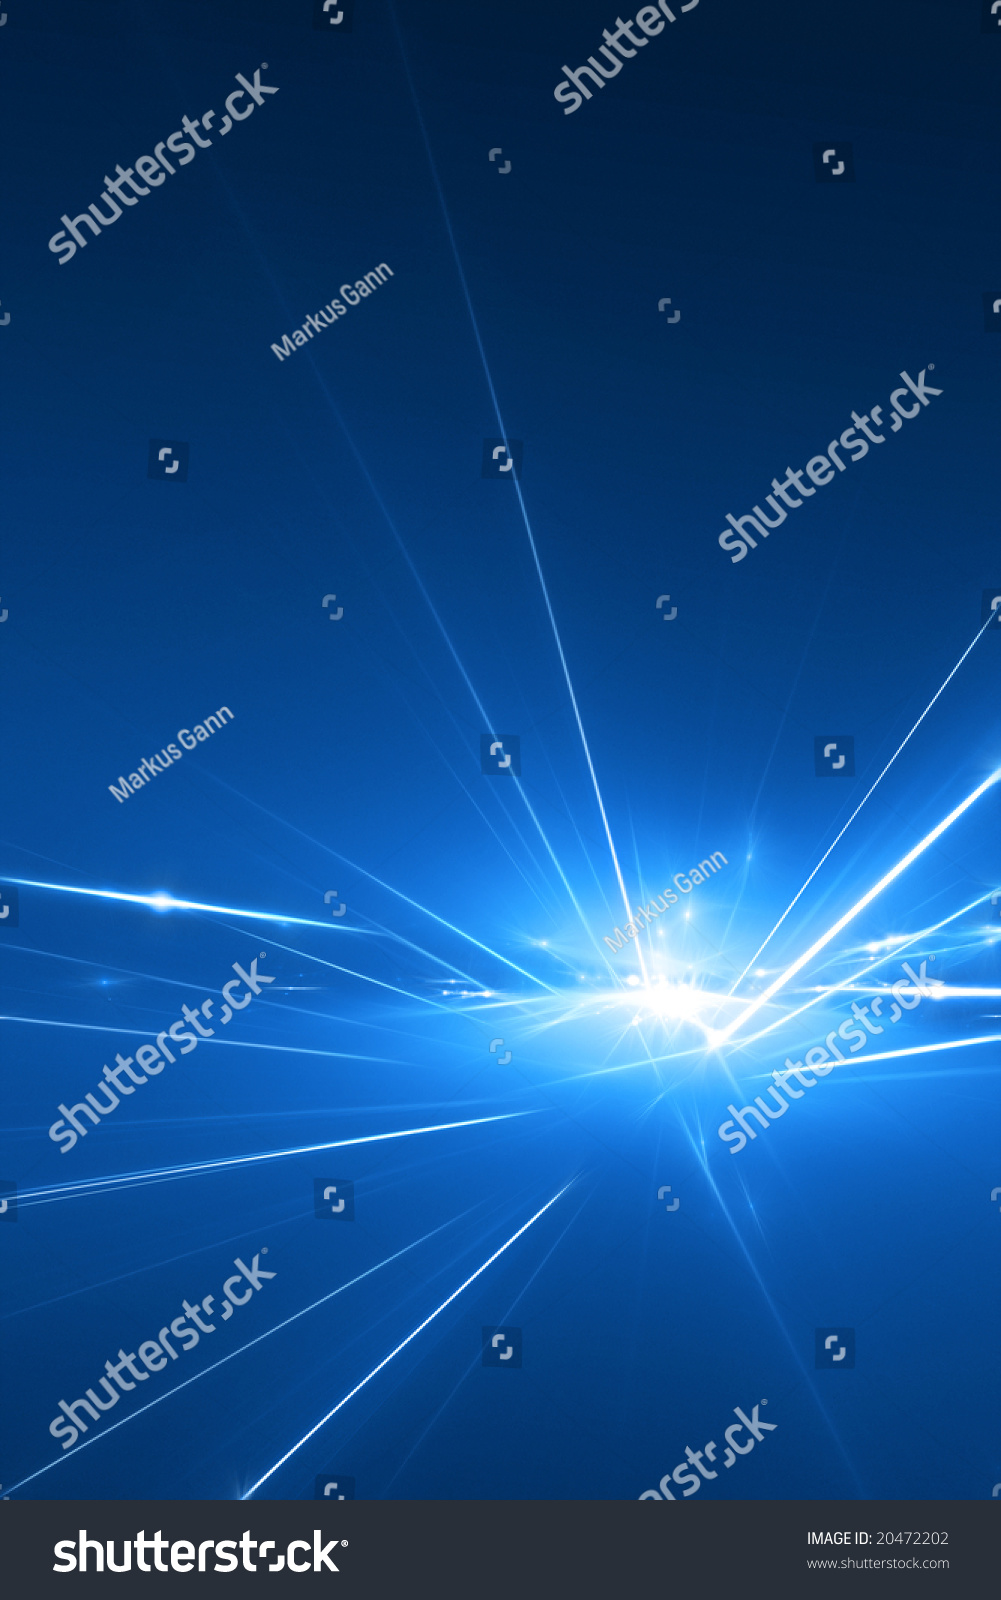 Laser Background Stock Illustration 20472202 - Shutterstock